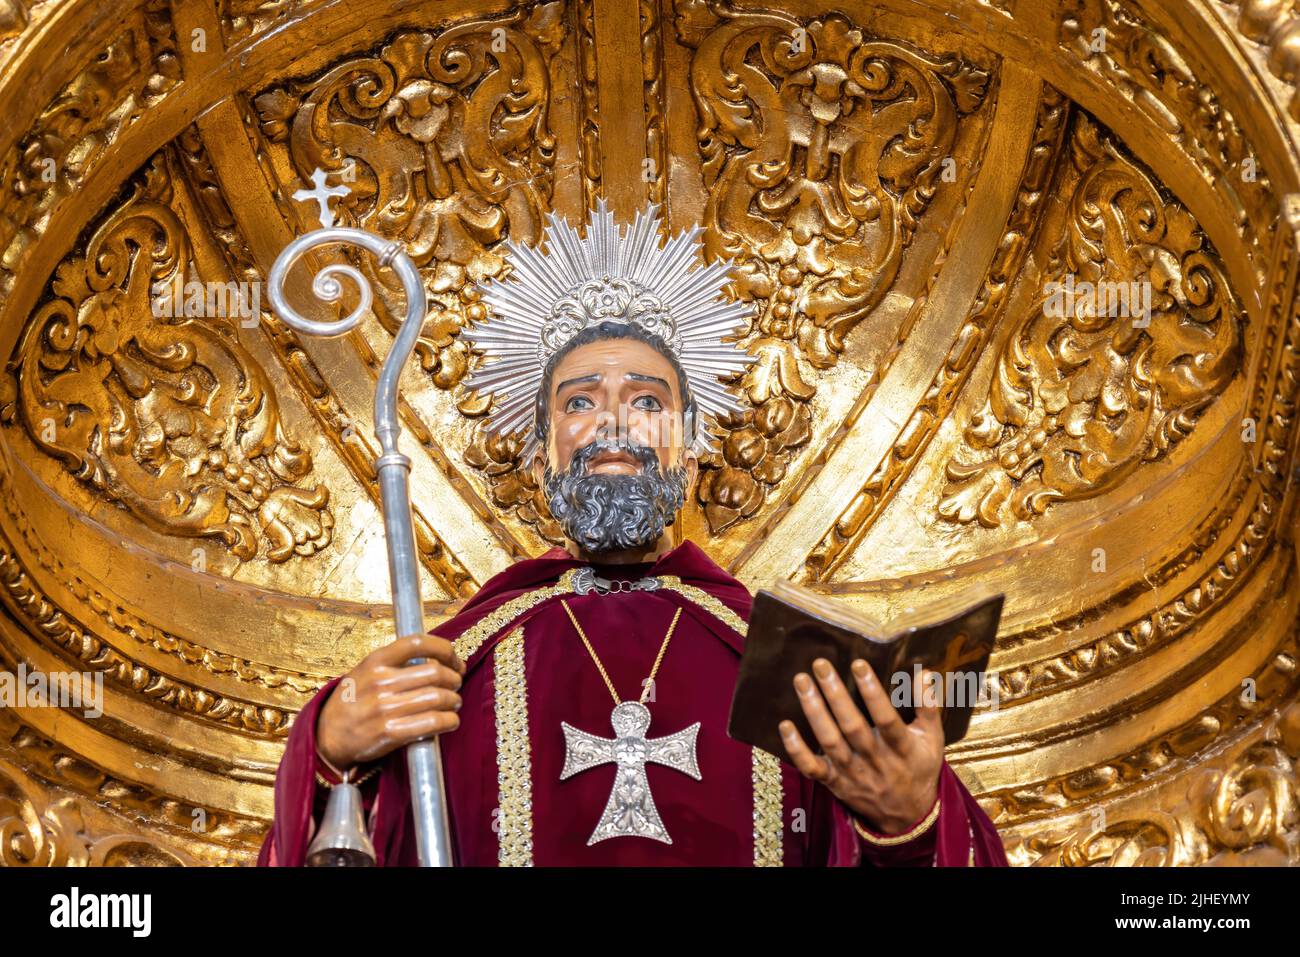 Trigueros, Huelva, España - 17 de abril de 2022: Detalle del Jefe de Escultura de San Antonio Abad, santo de trigueros, en su chata dorada Foto de stock